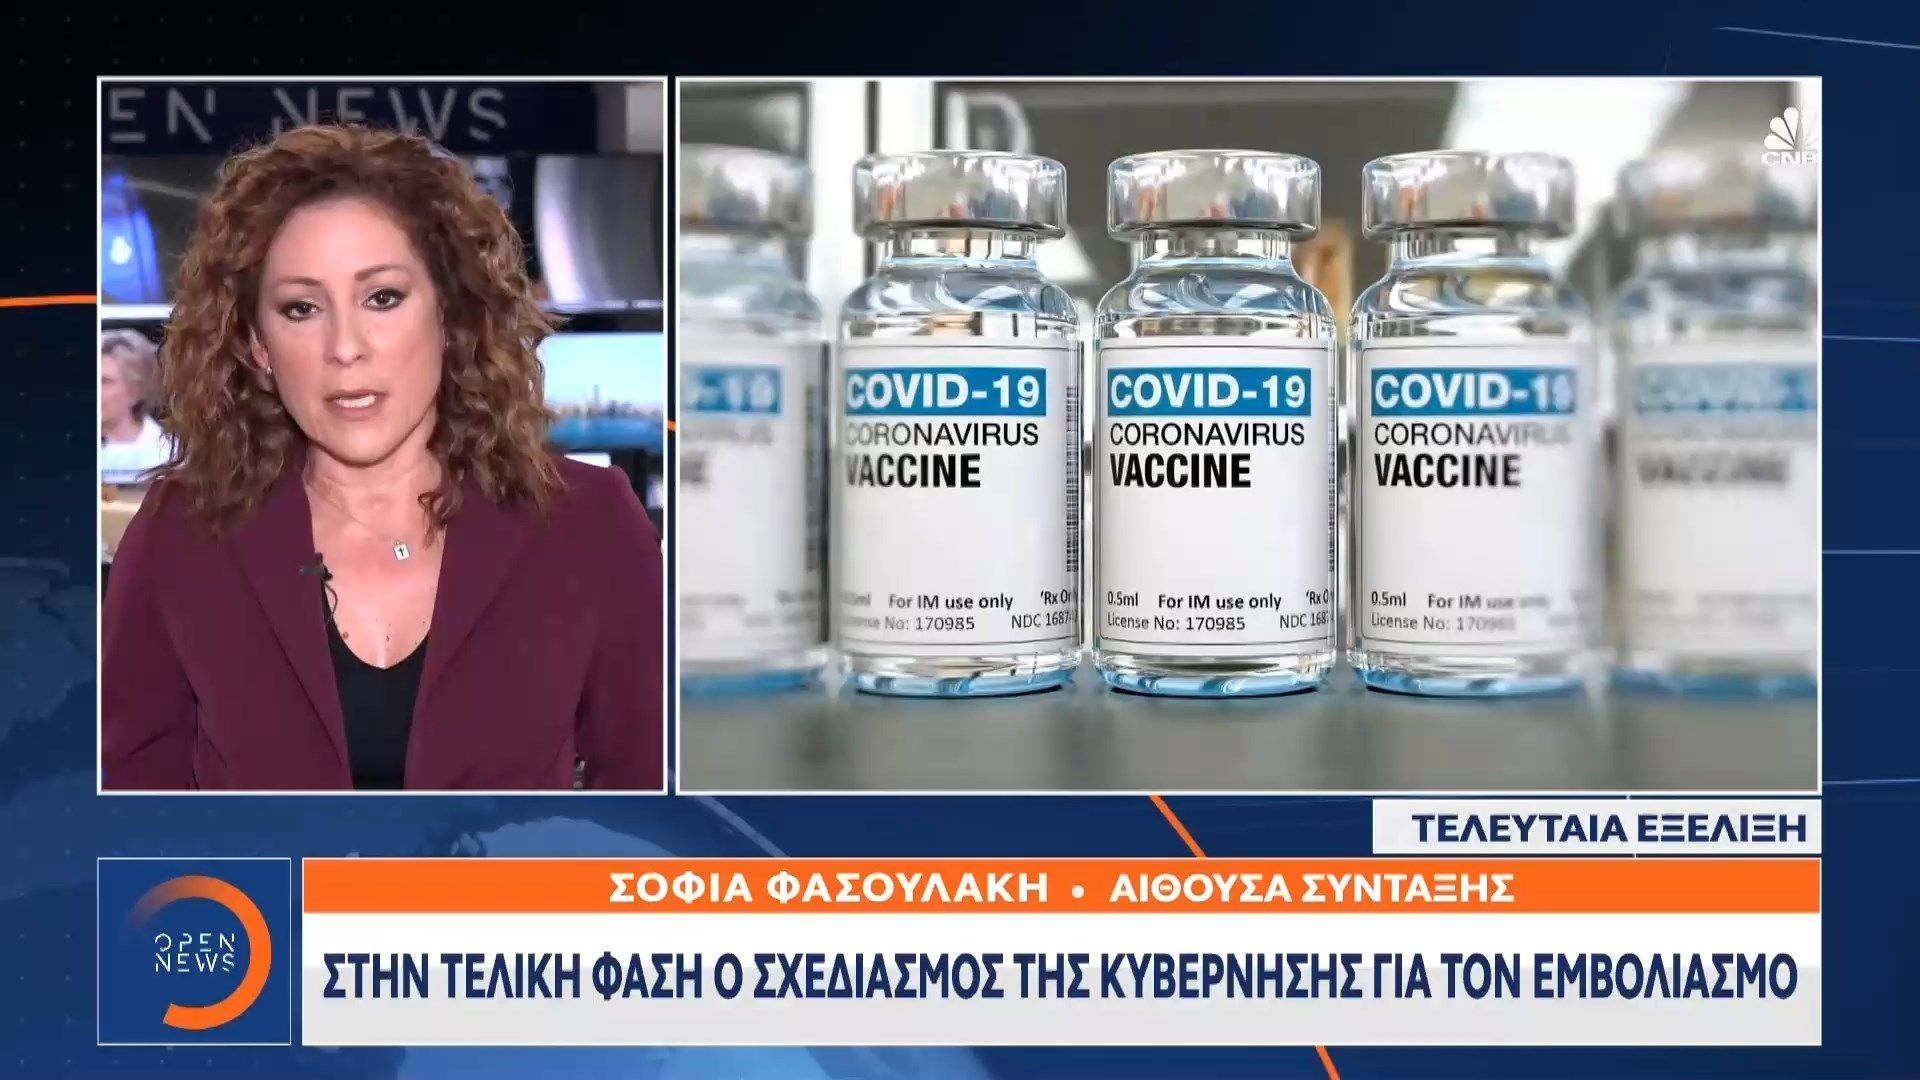 Στην τελική φάση ο σχεδιασμός της κυβέρνησης για τον εμβολιασμό (video)